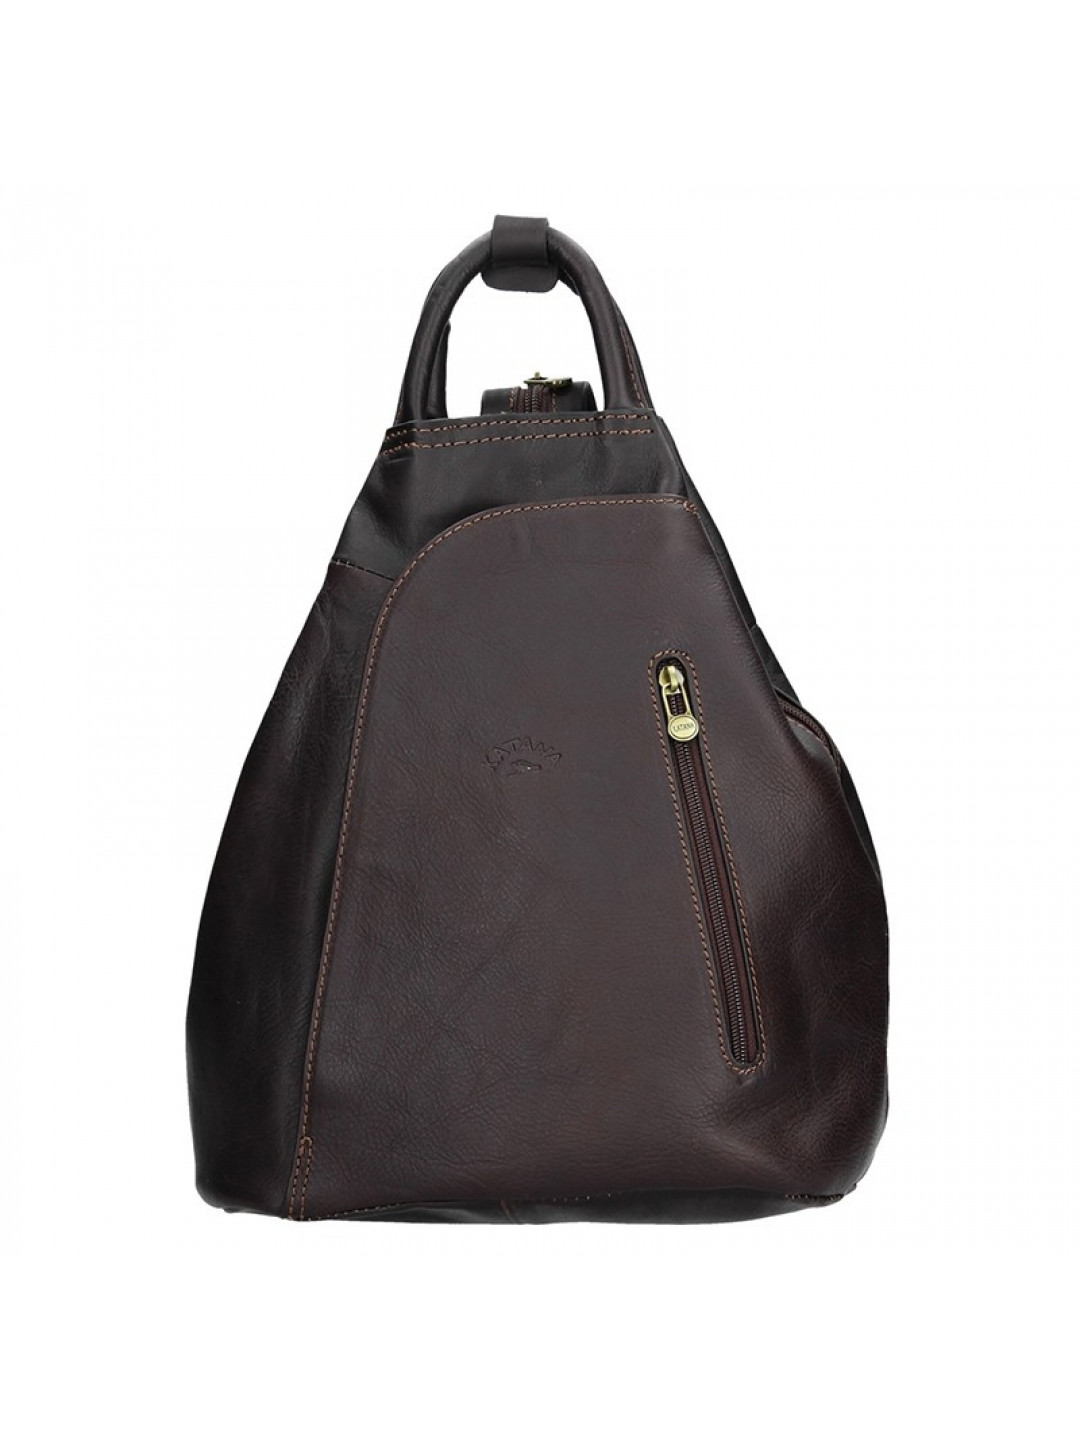 Elegantní dámský kožený batoh Katana Paula – tmavě hnědá